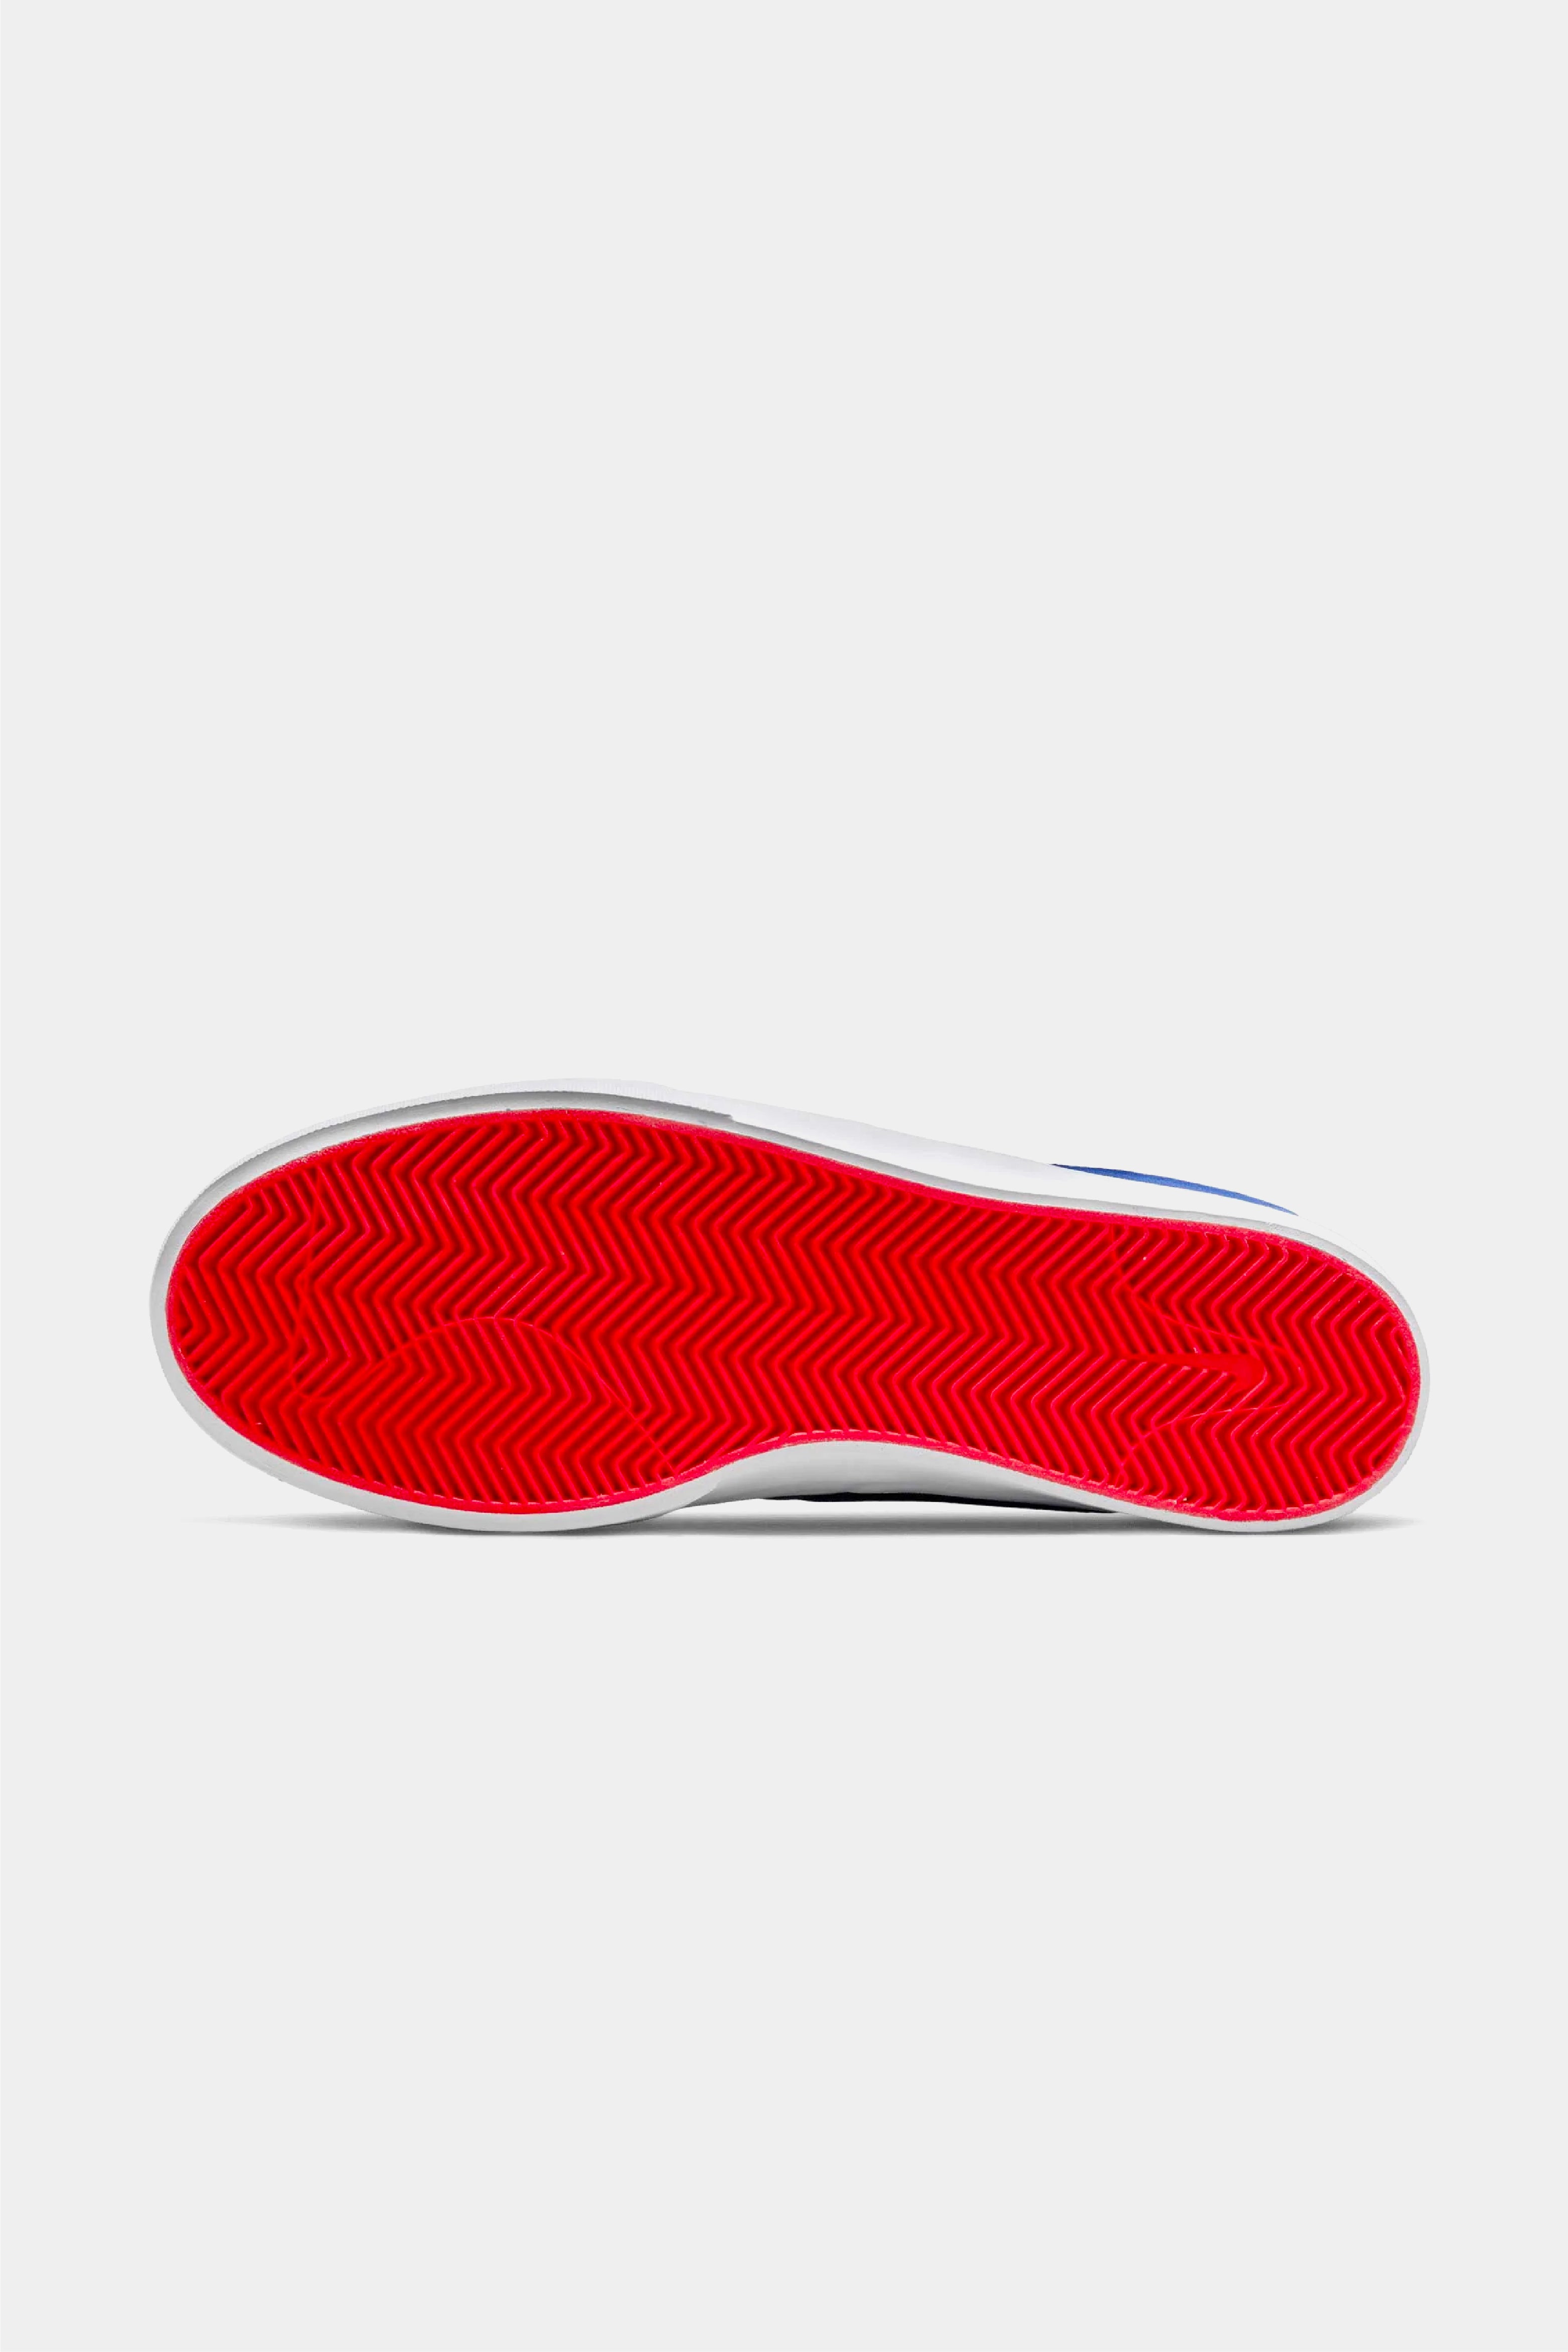 Selectshop FRAME - NIKE SB Nike SB Shane Concord/Turquoise Blue Concord Footwear Dubai